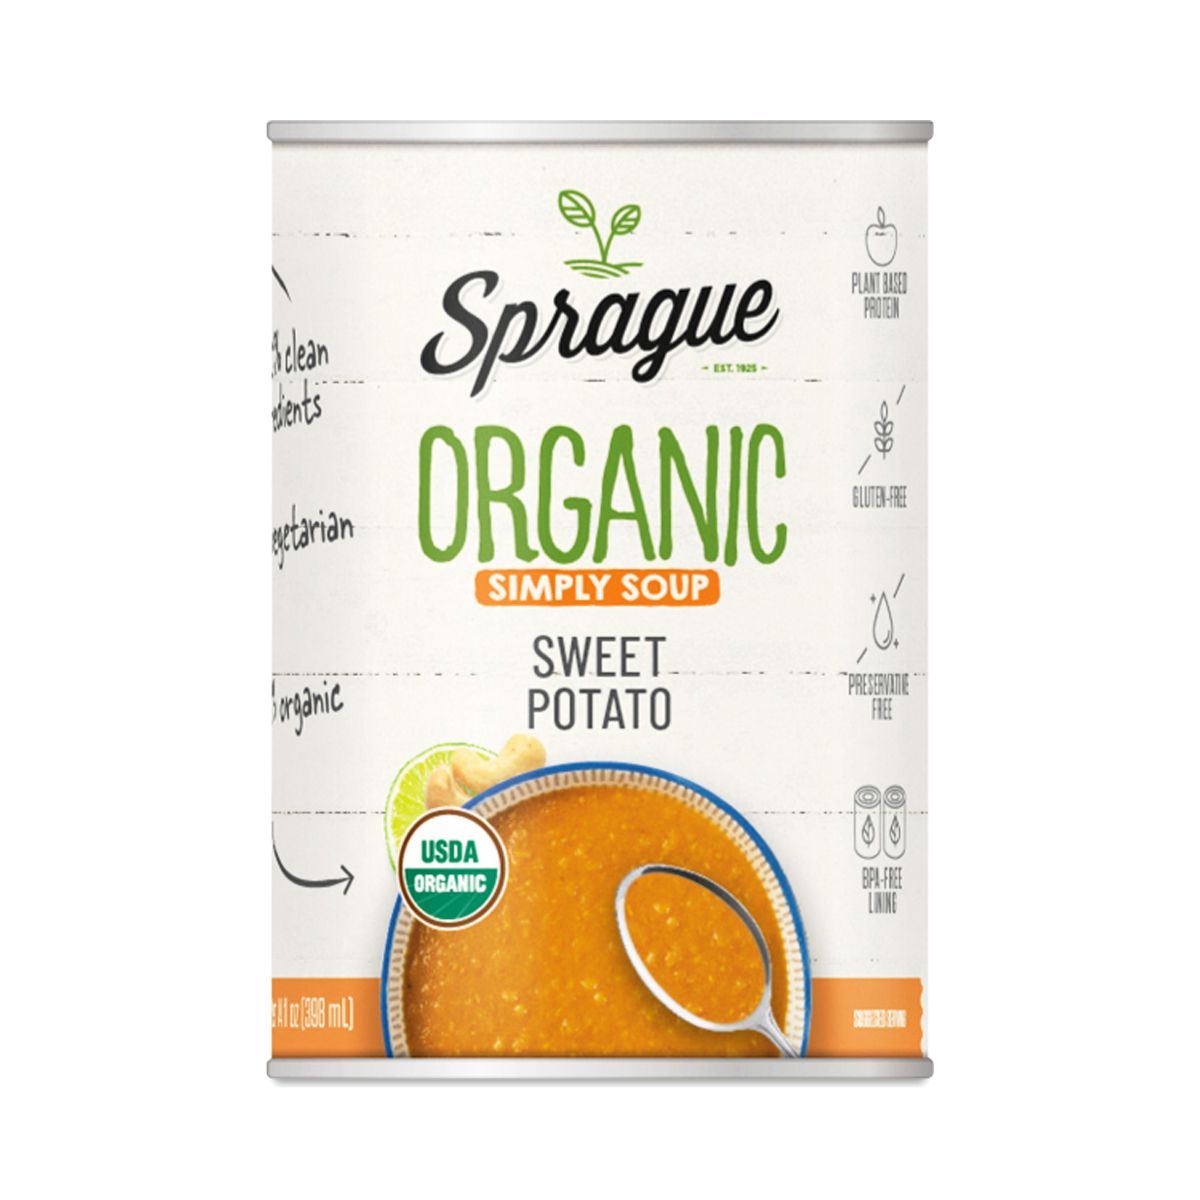 Sprague Organic Sweet Potato Soup 15 oz can